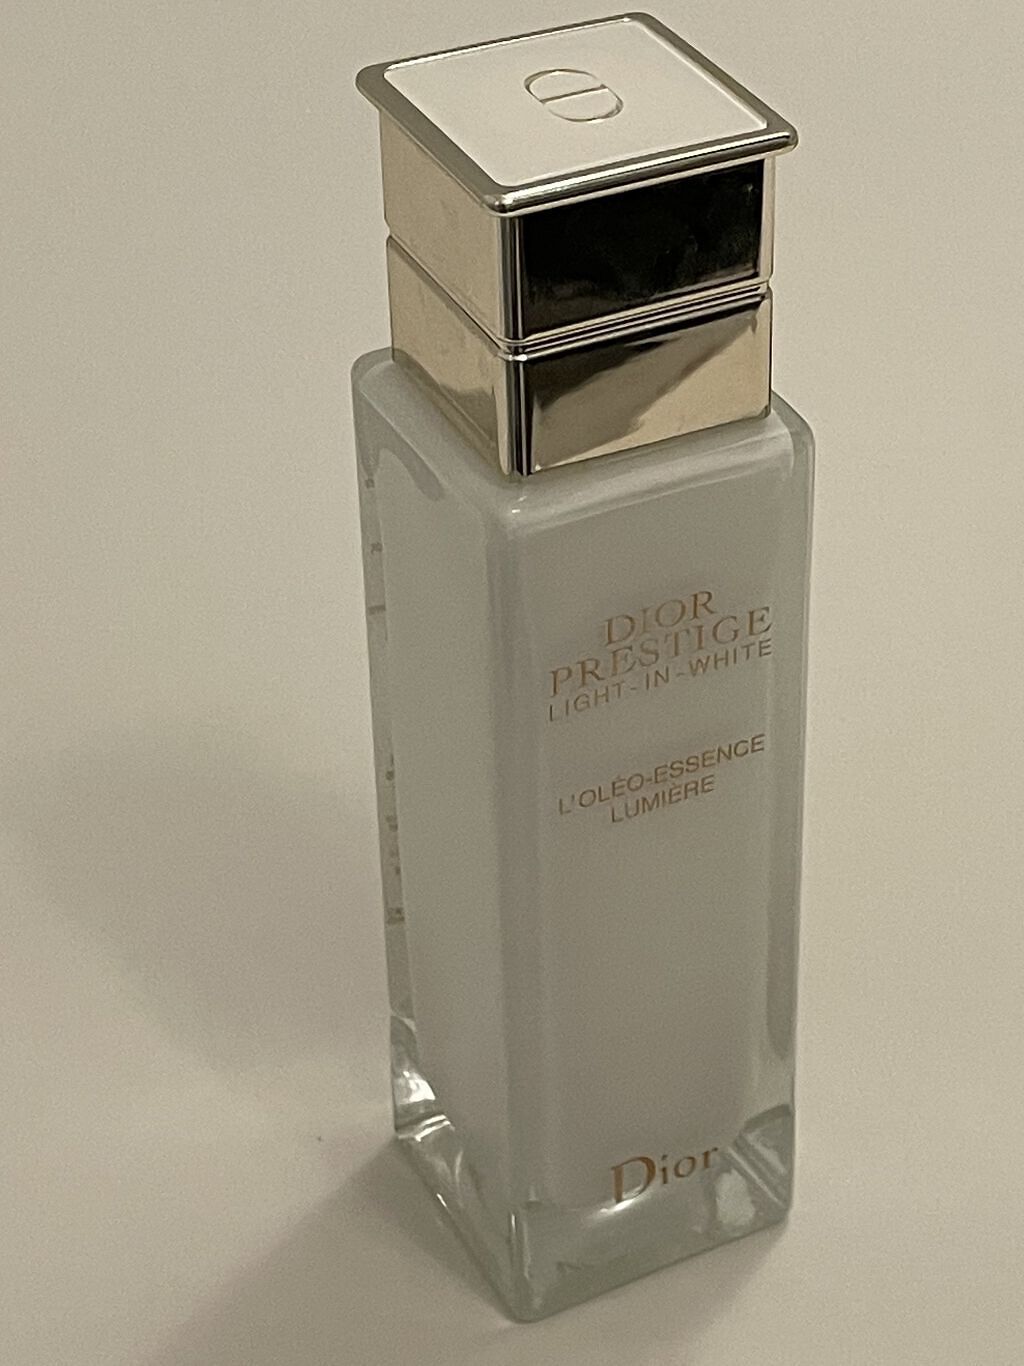 限定SALE安い ココ様専用 Dior 2点お纏めプレステージホワイト オレオ